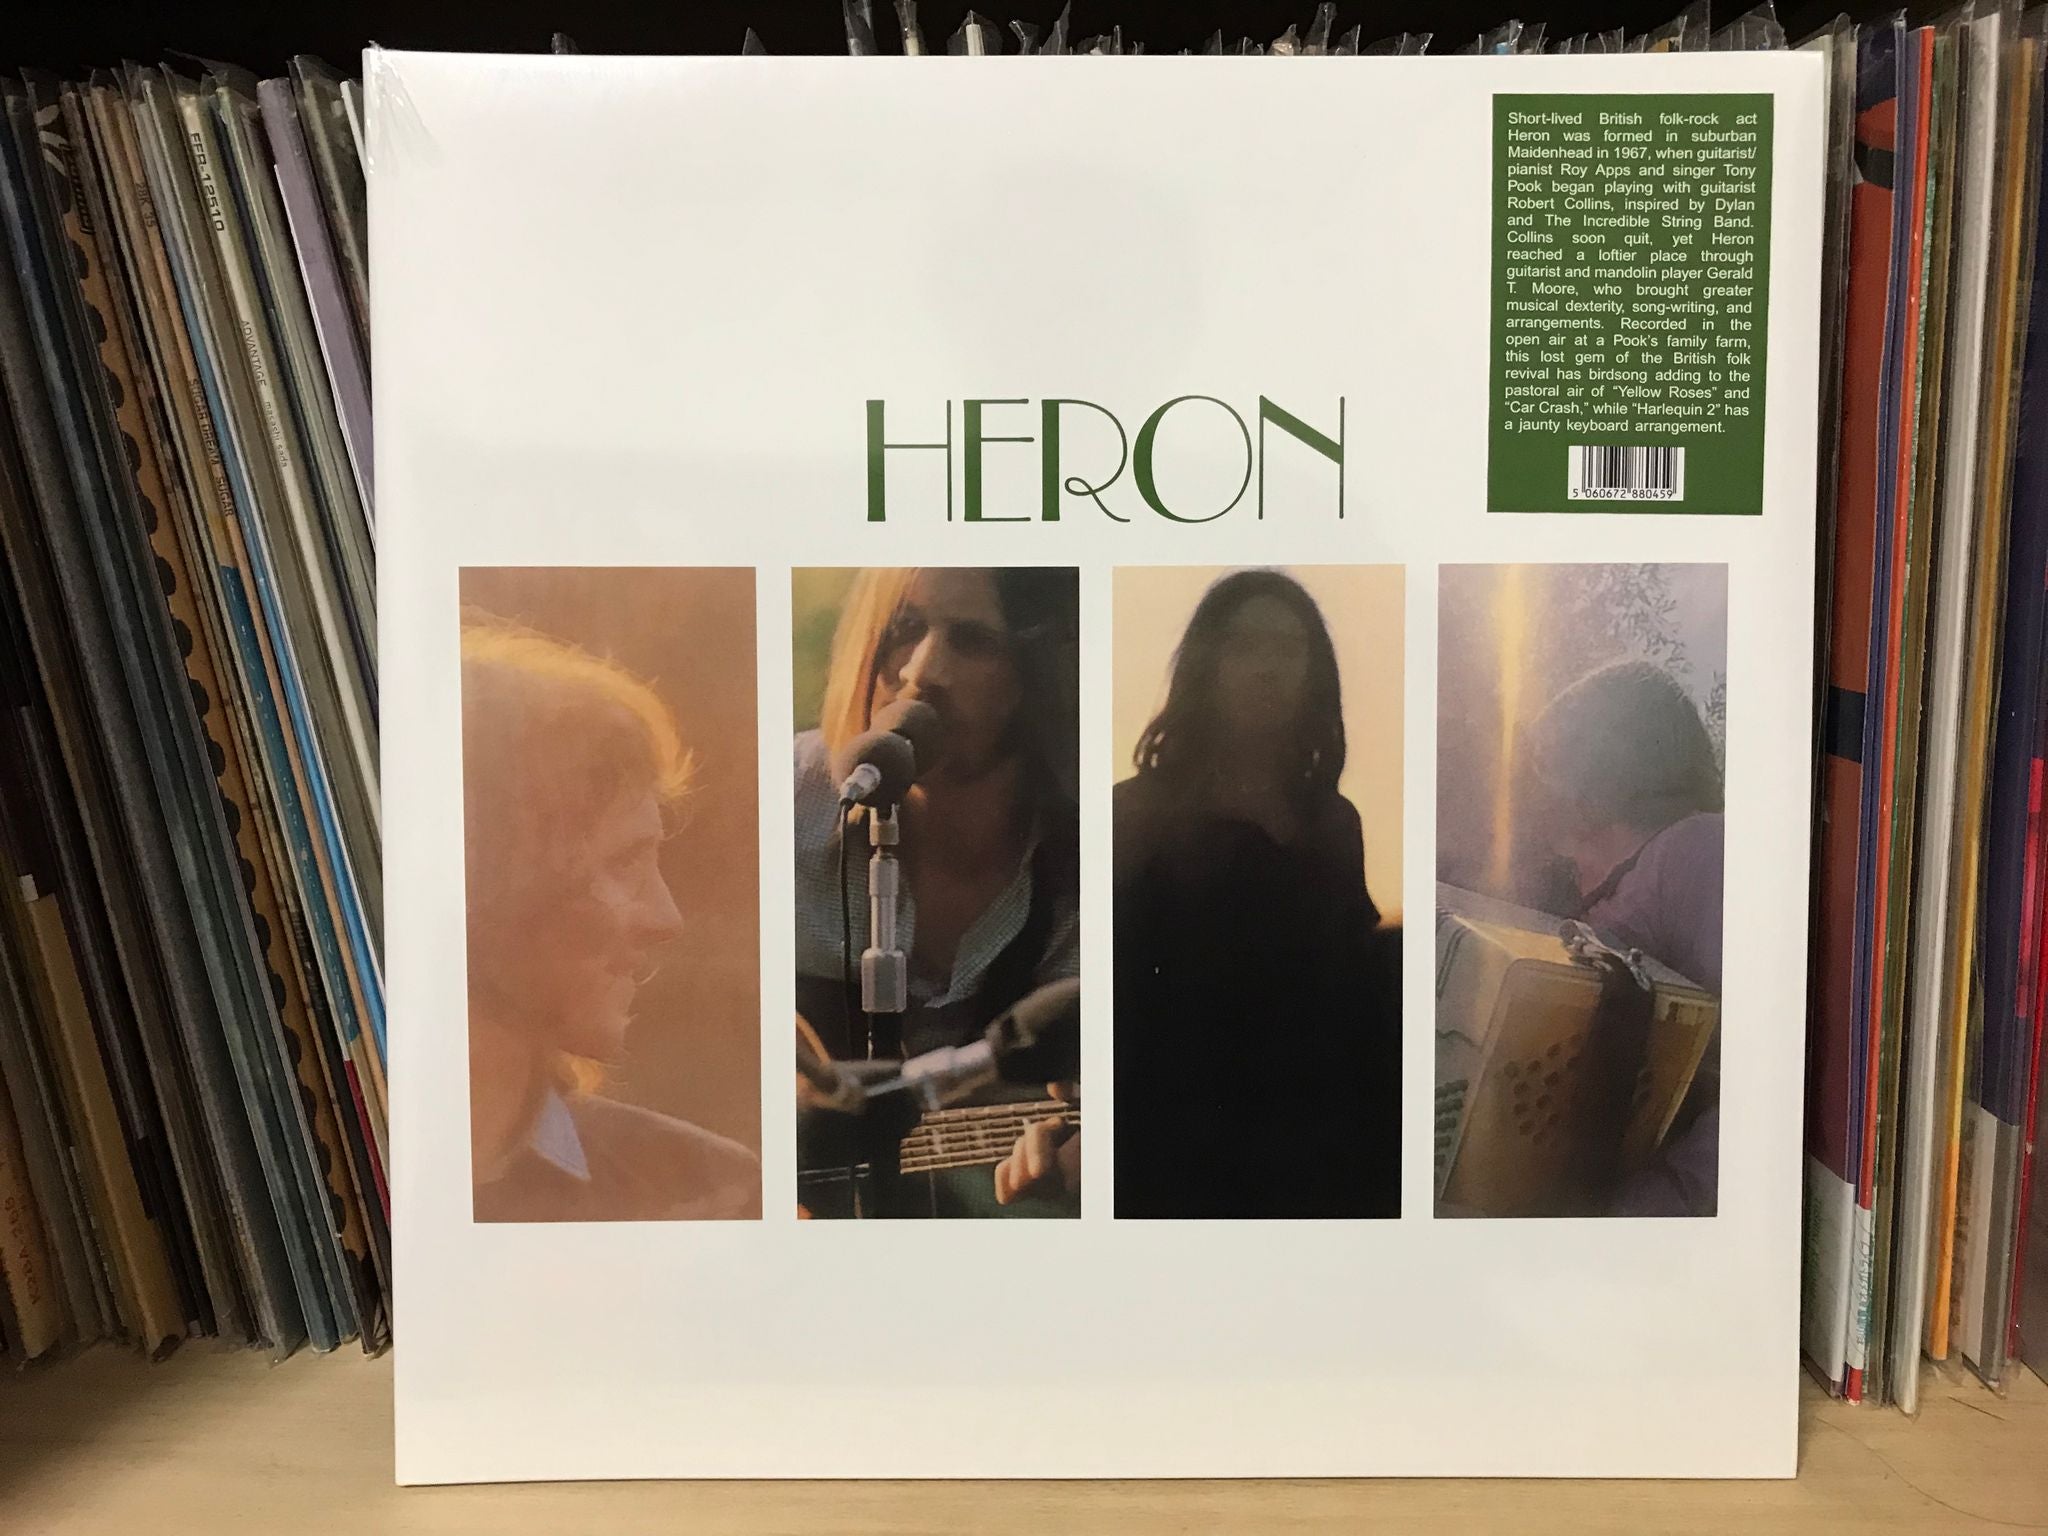 新作商品 Heron S.T. LPレコード UK ブリティッシュフォーク大名盤 - ブリティッシュフォーク、トラッド -  www.petromindo.com